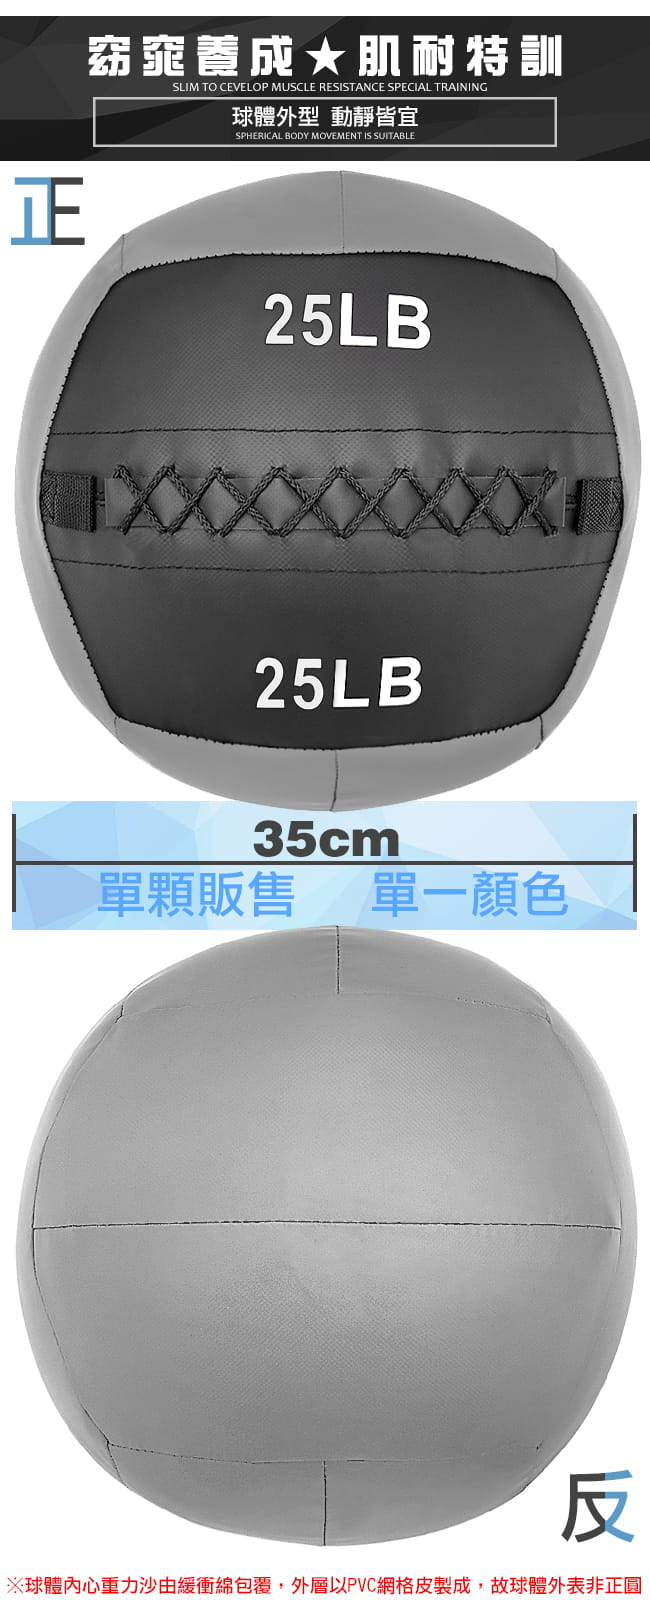 負重力25LB軟式藥球   11.3KG舉重量訓練球 7